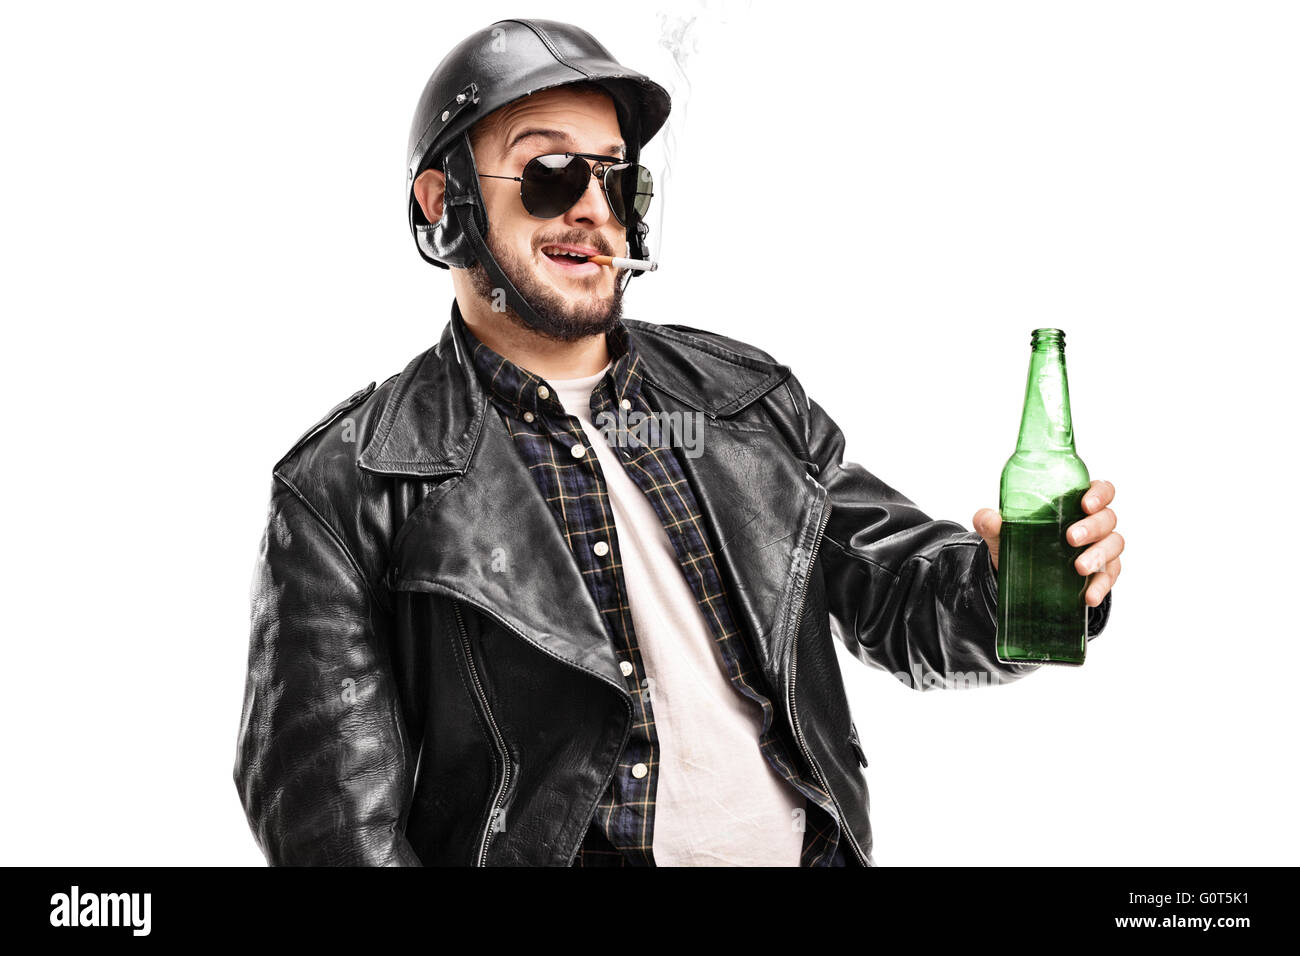 Homme biker dans une veste en cuir noire tenant une bière et fumer une cigarette isolé sur fond blanc Banque D'Images